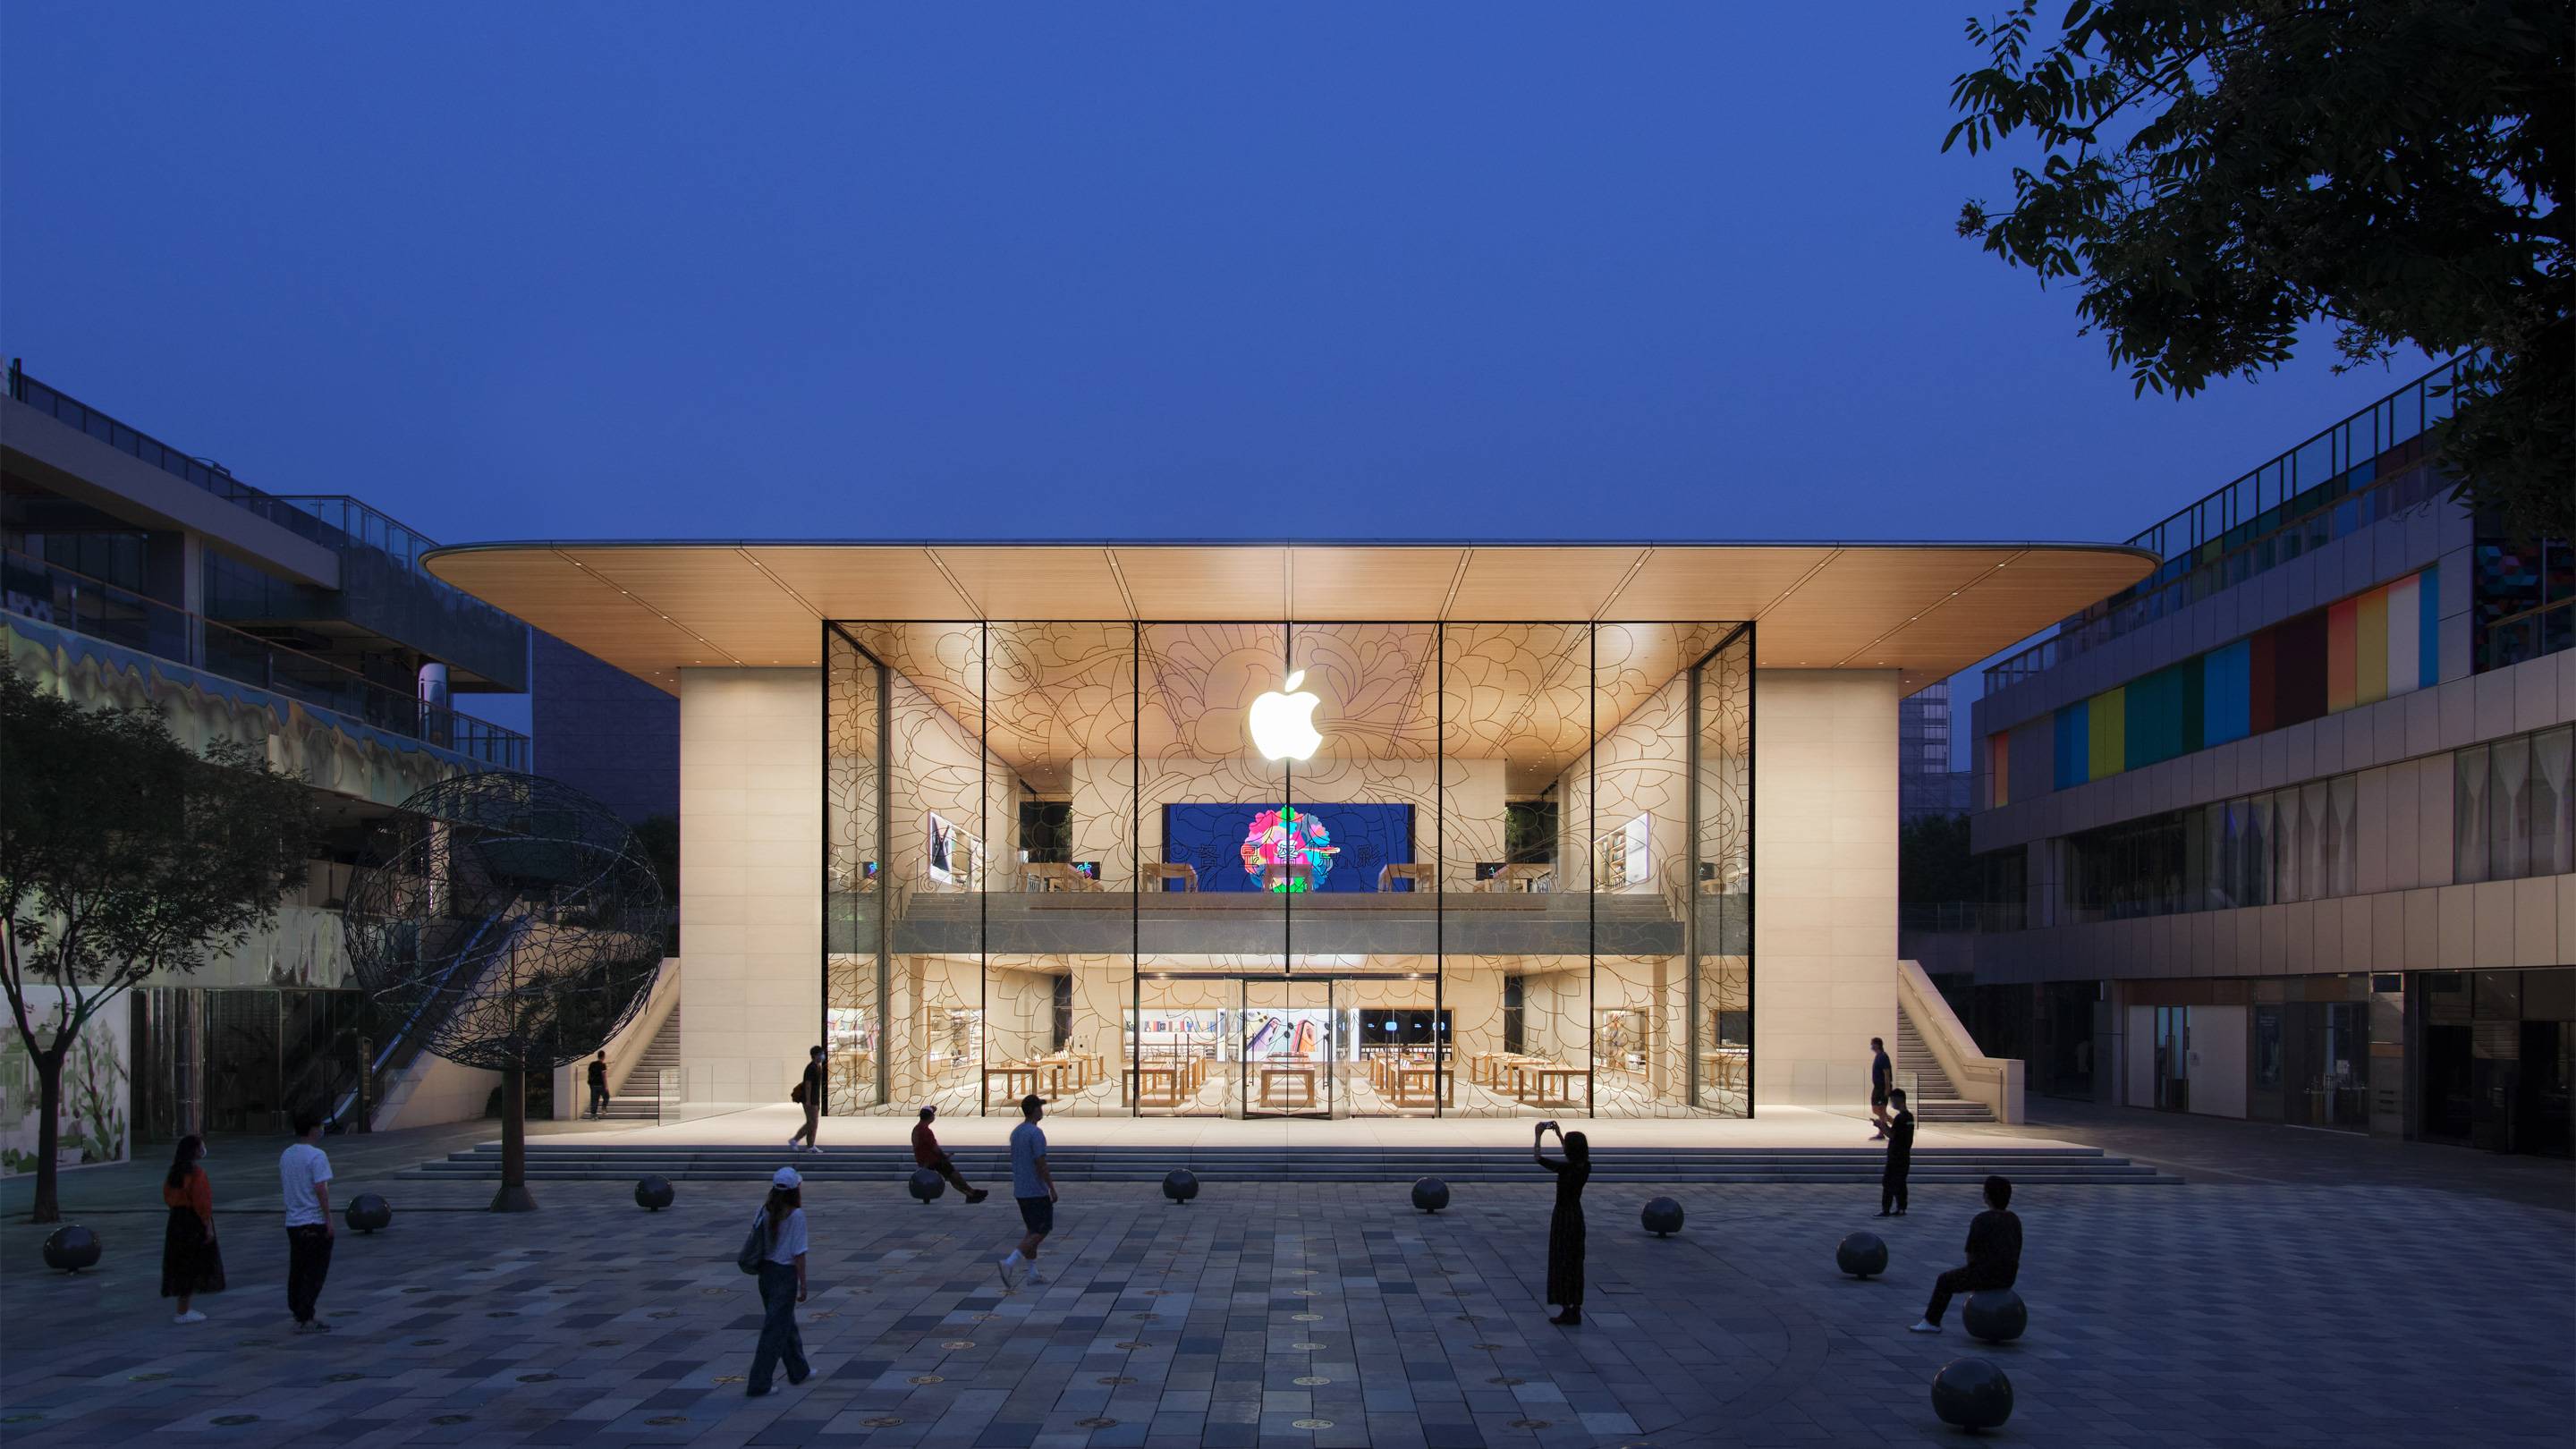 999999999999 - Cosa succederà all’Apple Store che è in attività da 20 anni in futuro?